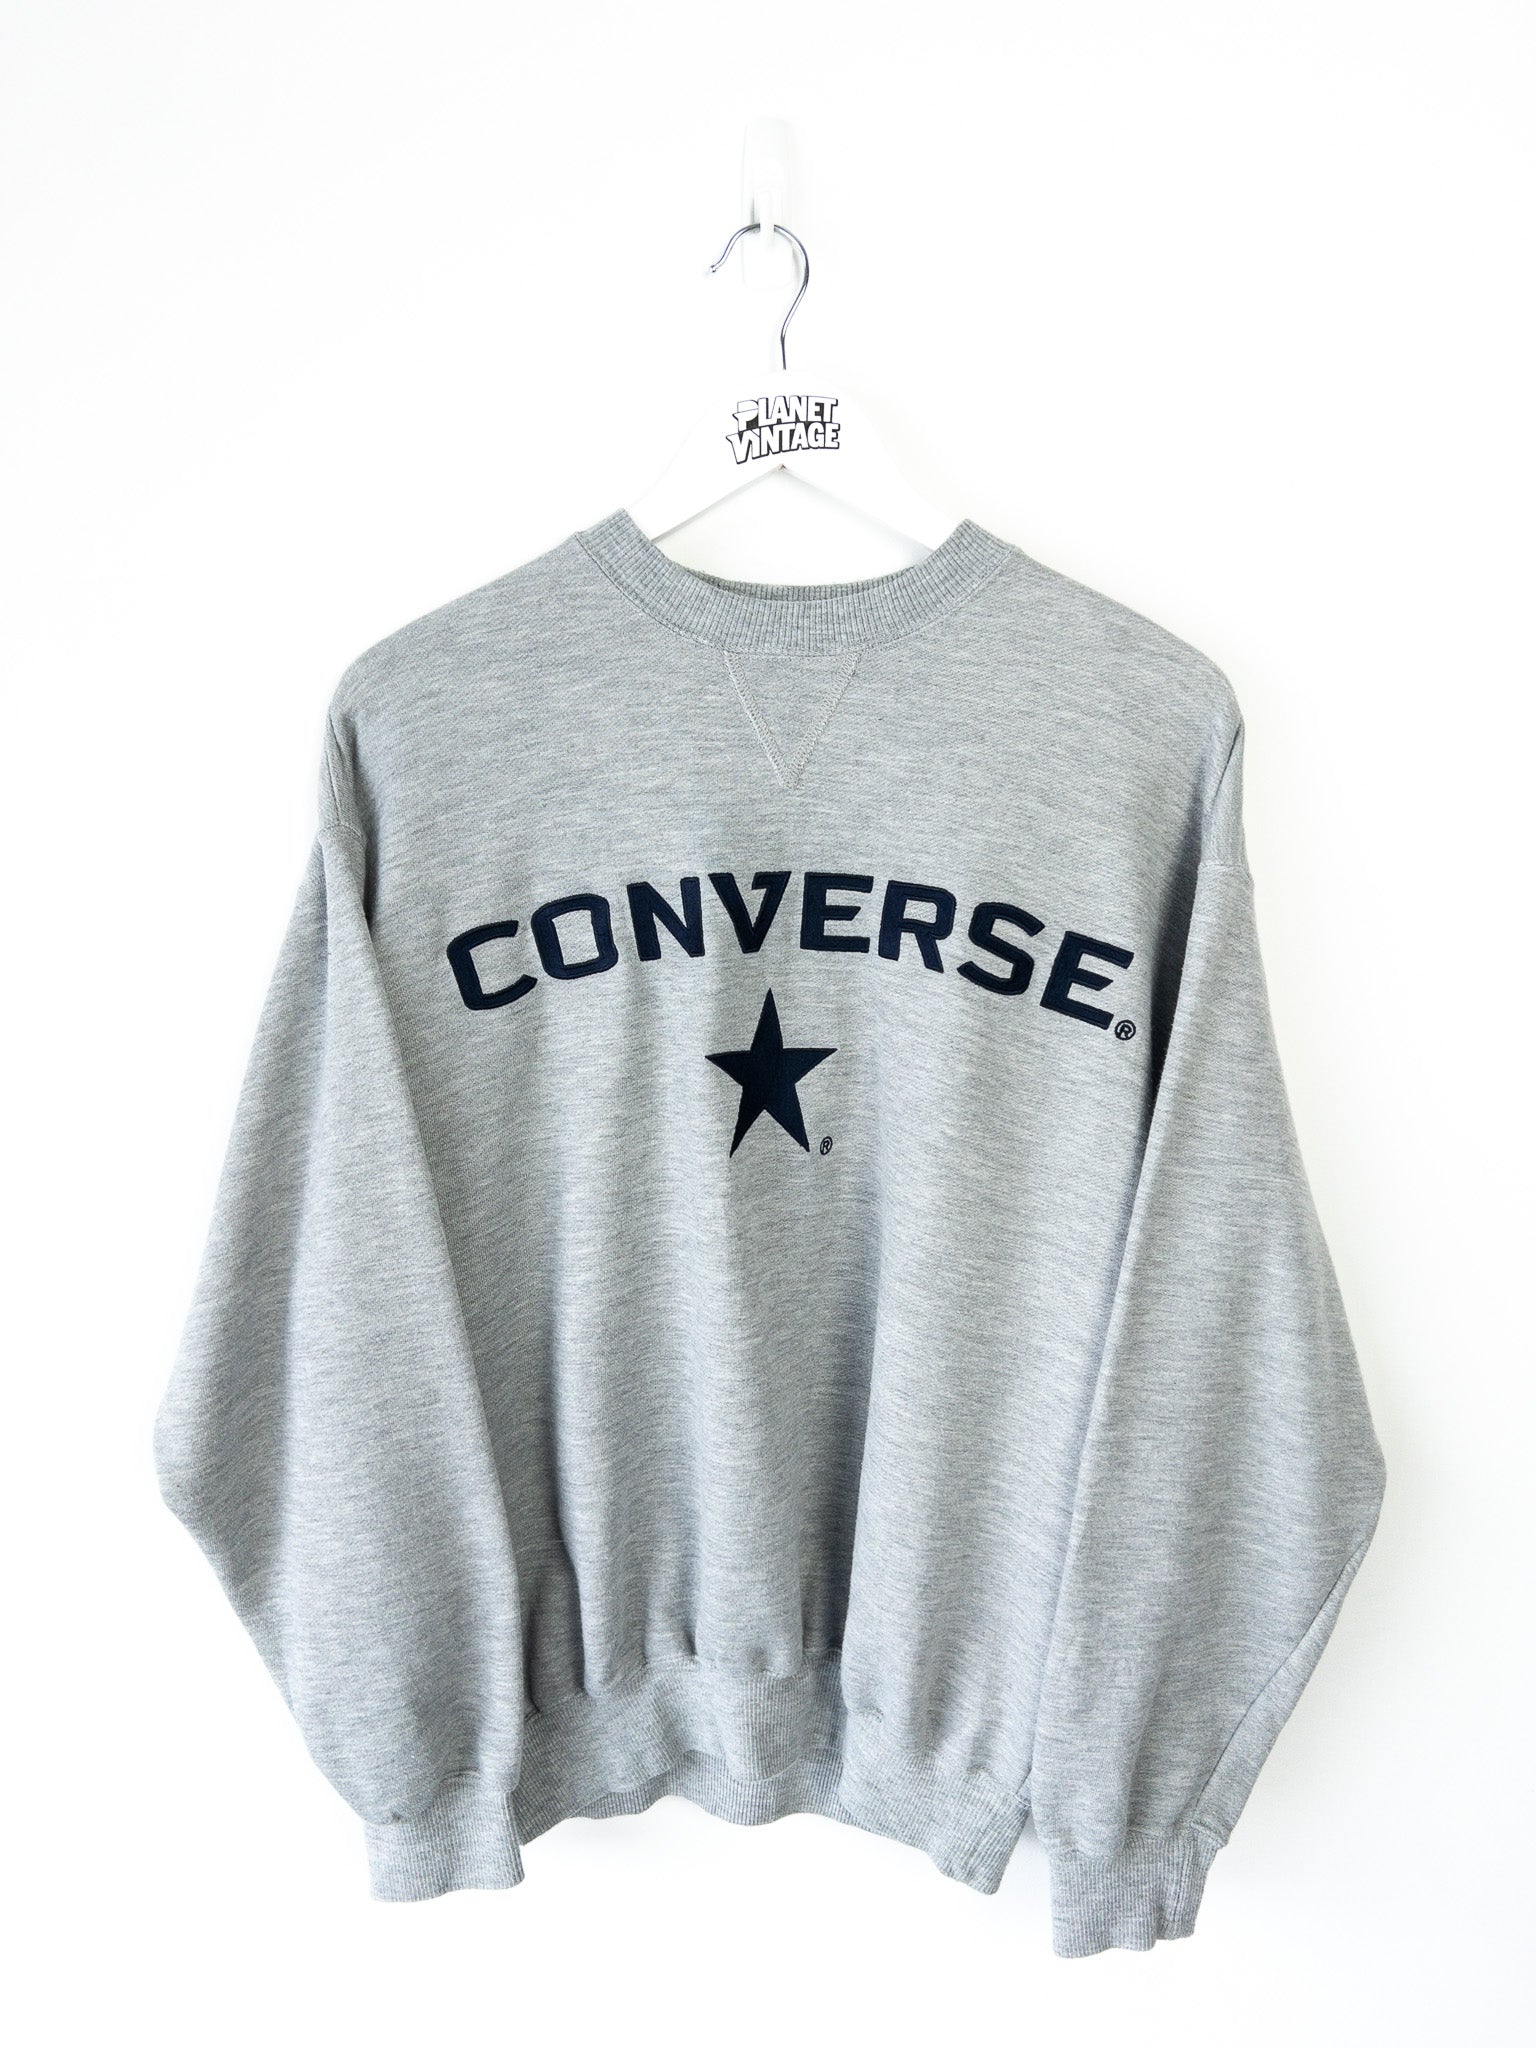 Vintage Converse Sweatshirt (L)